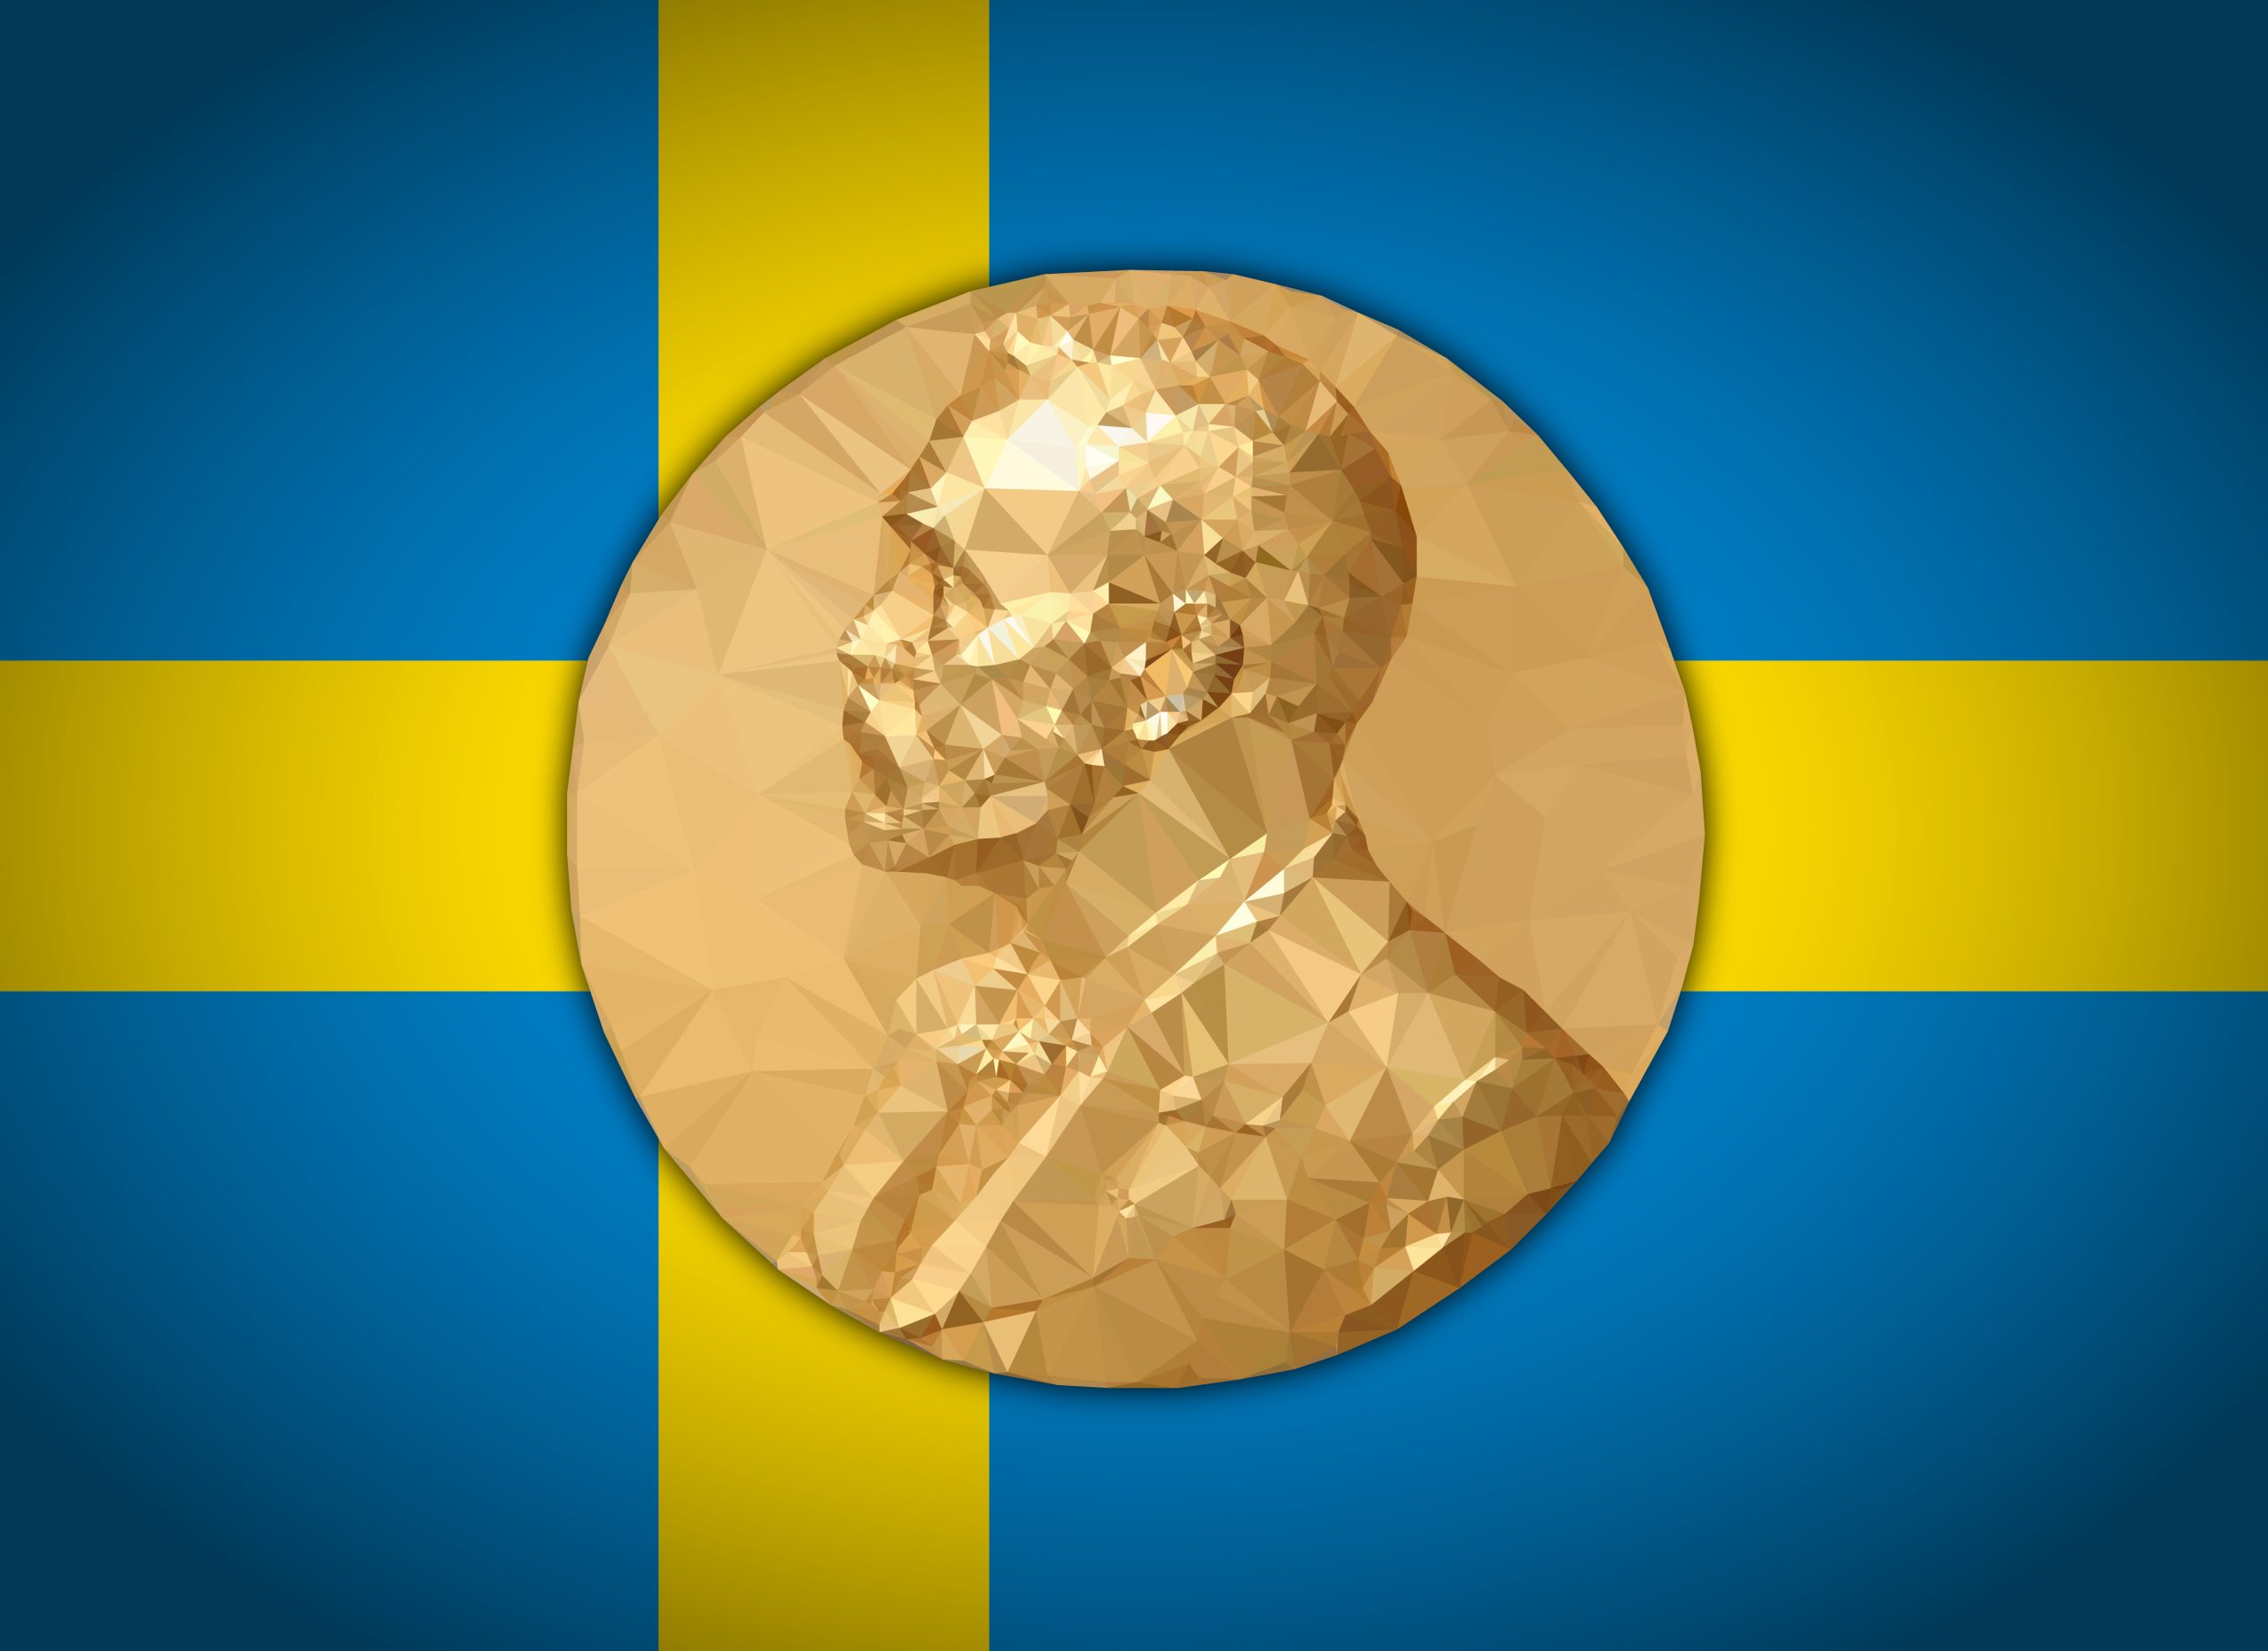 Alla svenska nobelpristagare del 1: Ekonomi, fred och fysik